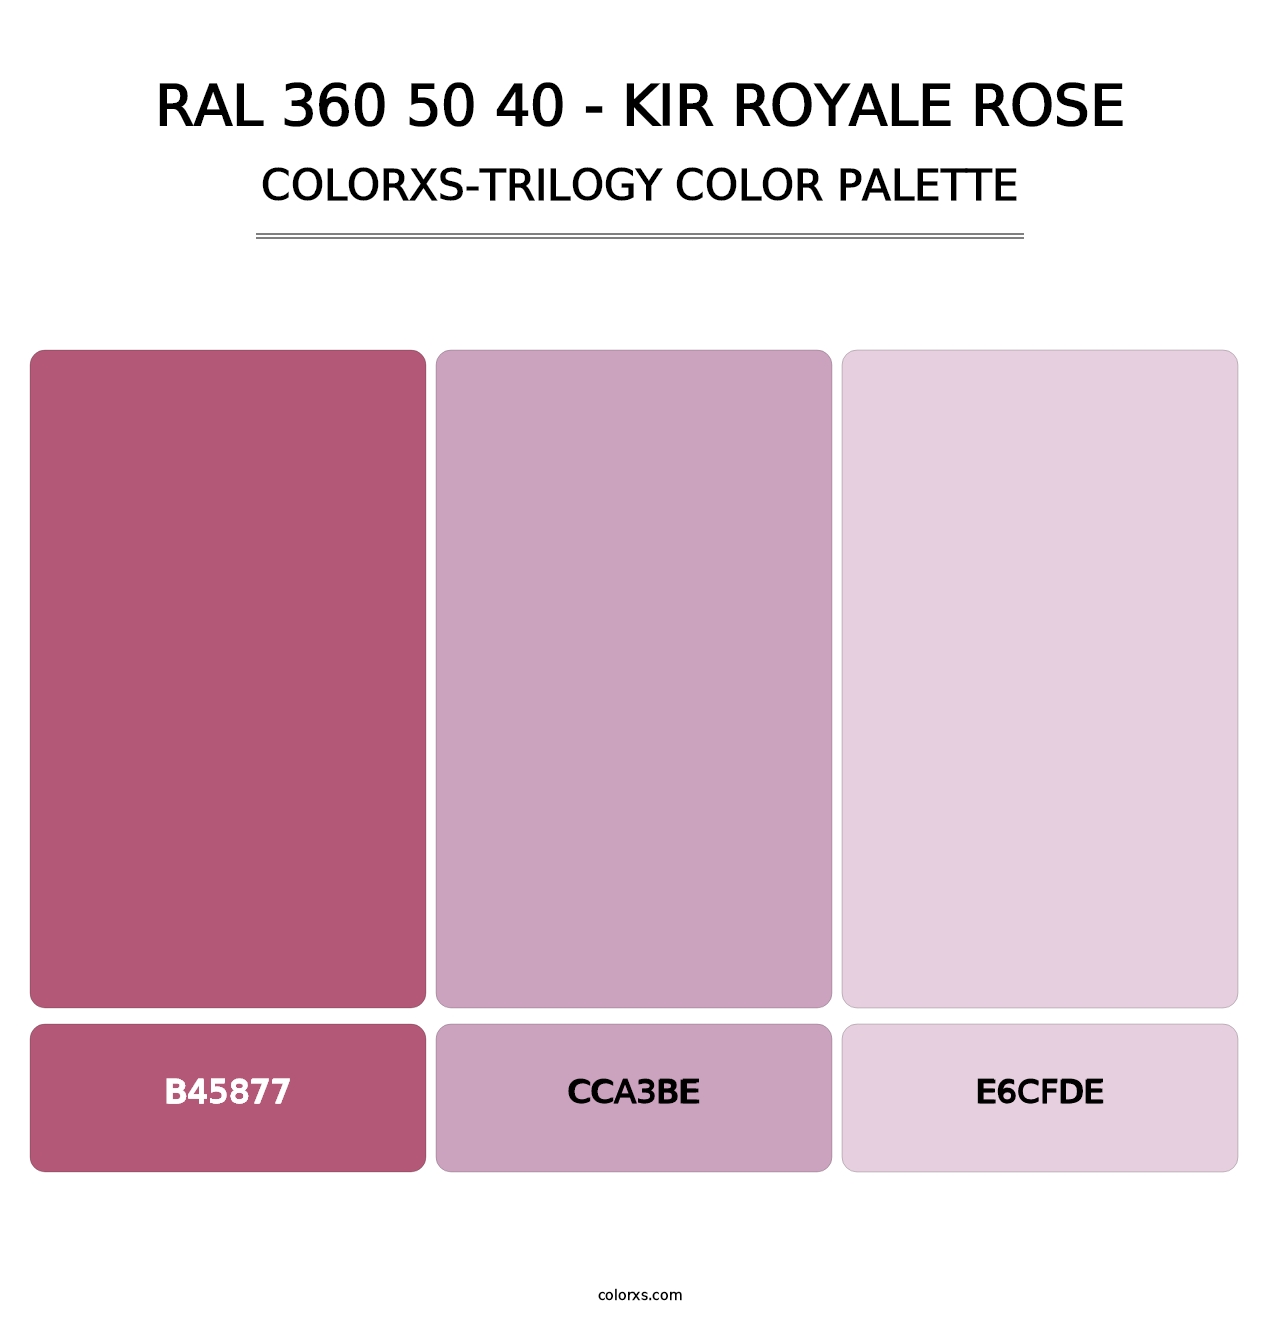 RAL 360 50 40 - Kir Royale Rose - Colorxs Trilogy Palette